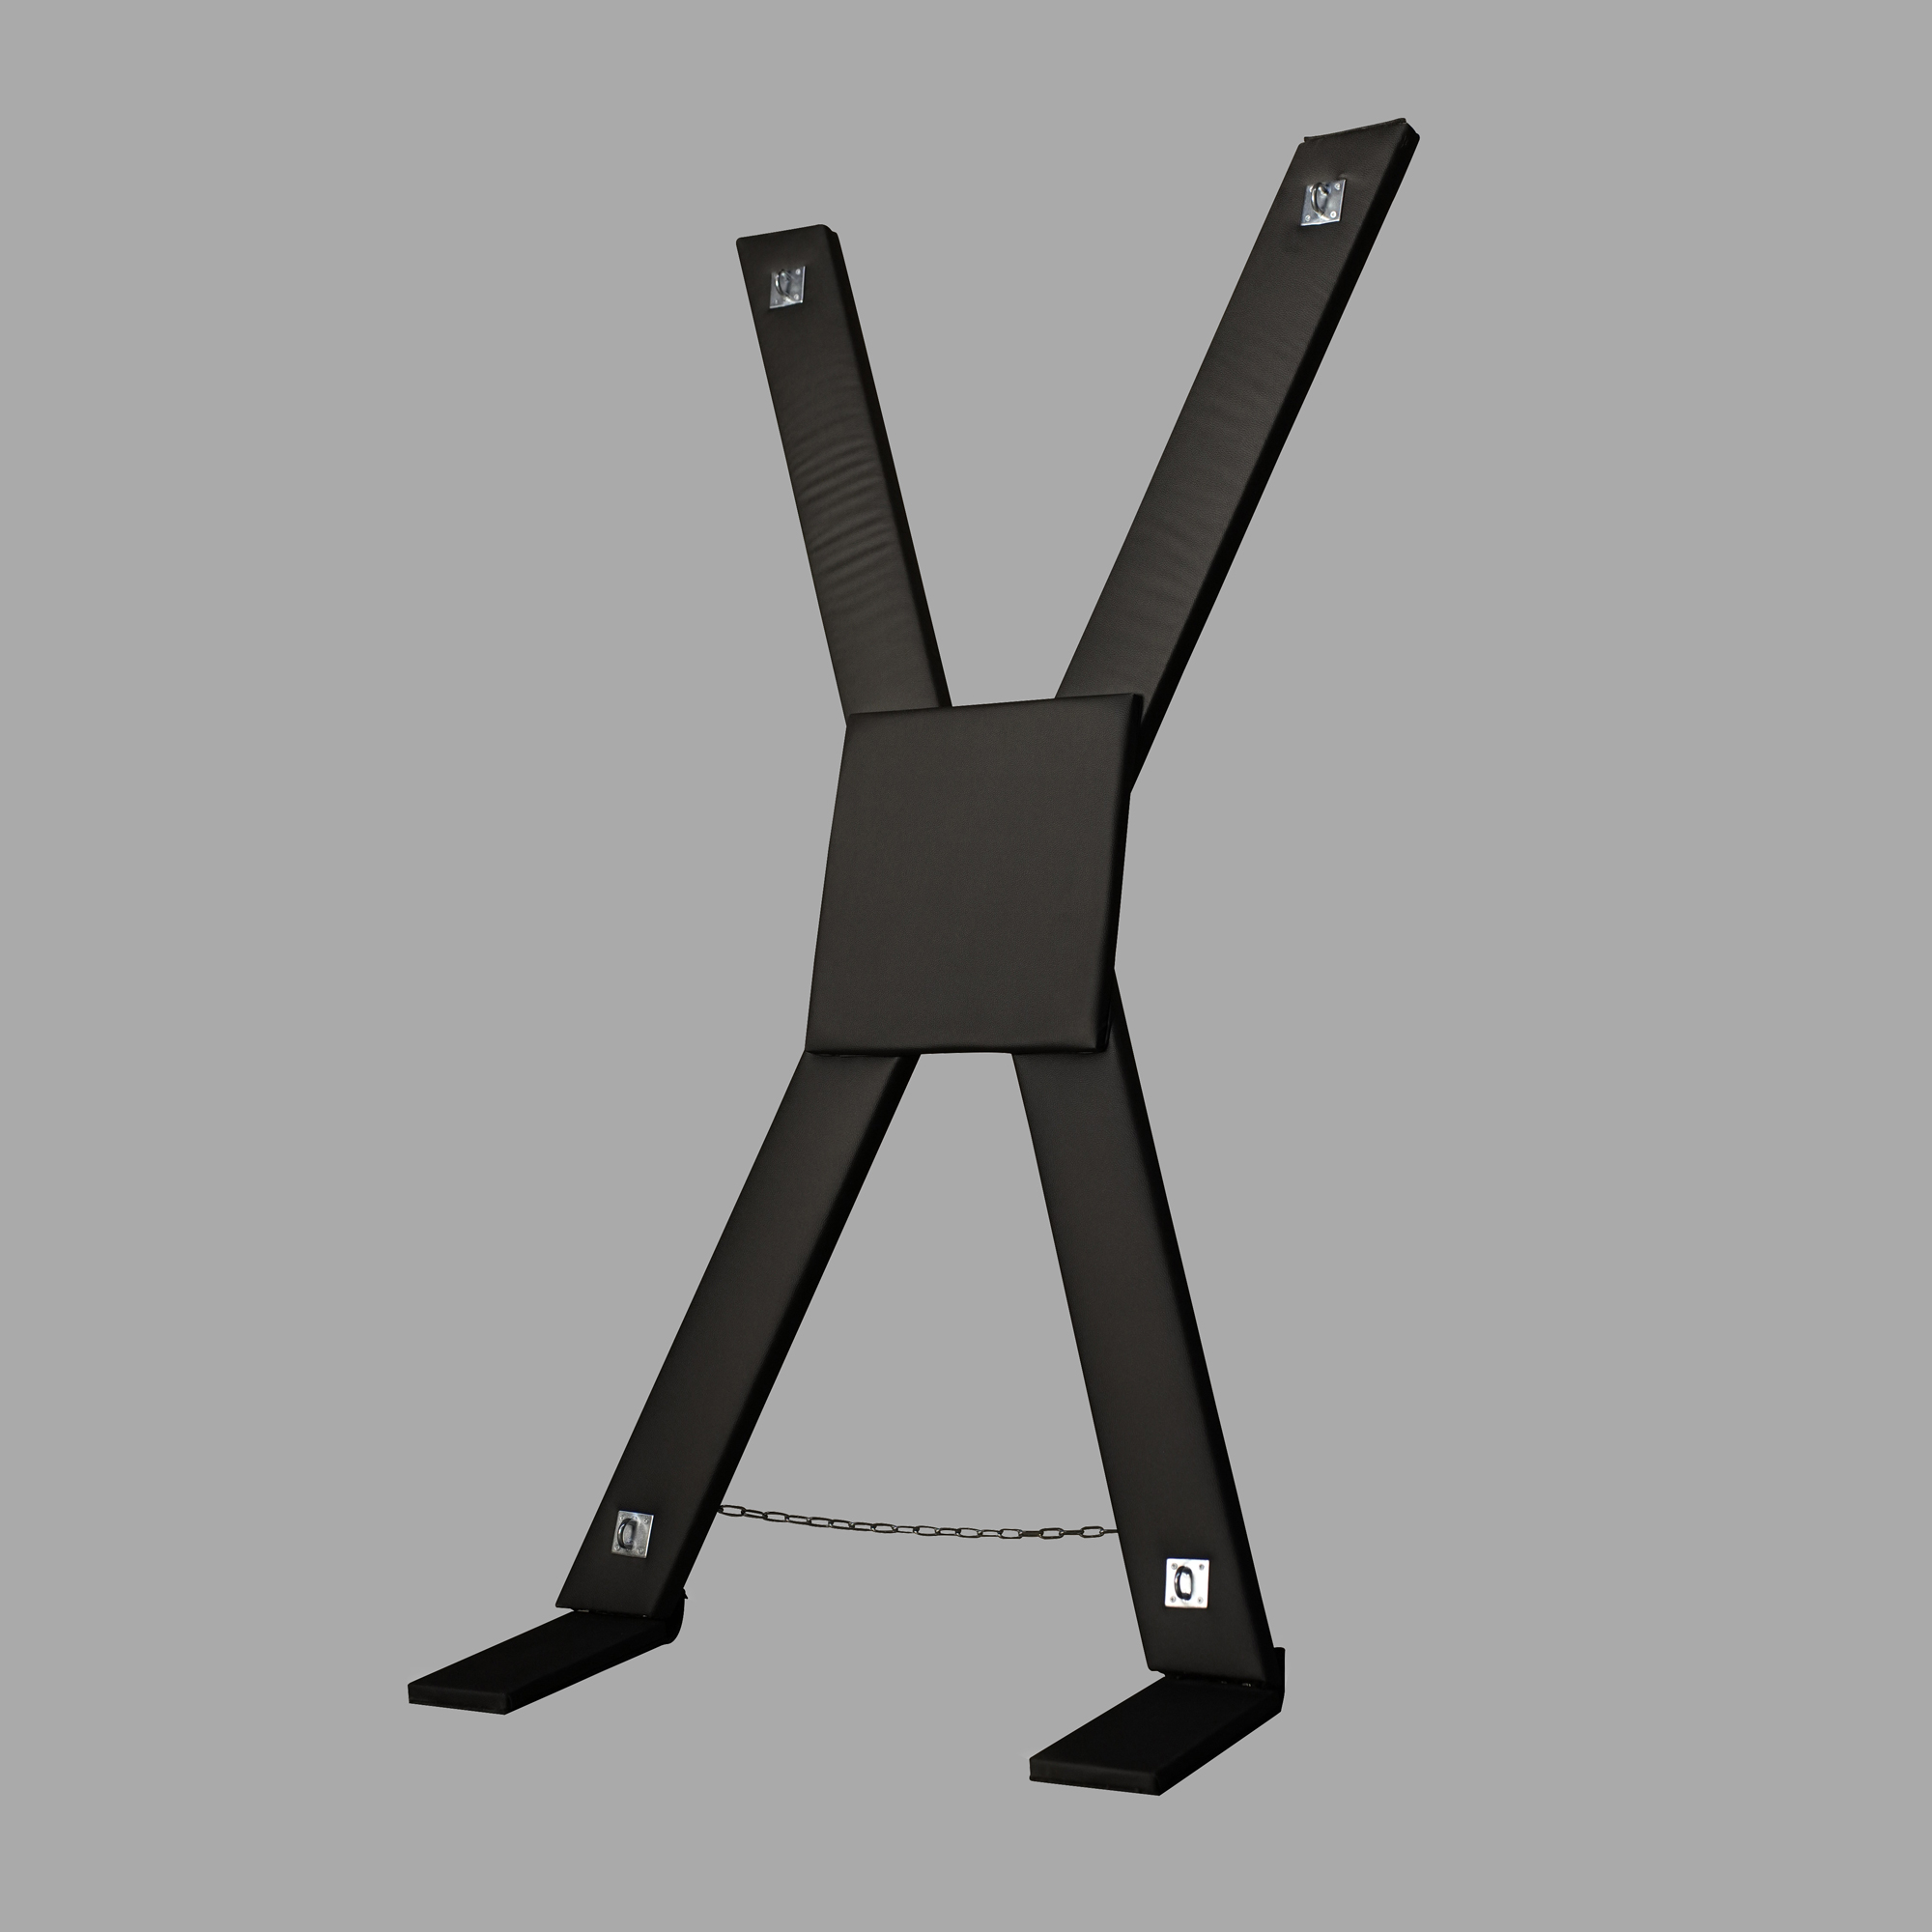 SM Bondage équipement sexe meubles X croix support cadre chaise